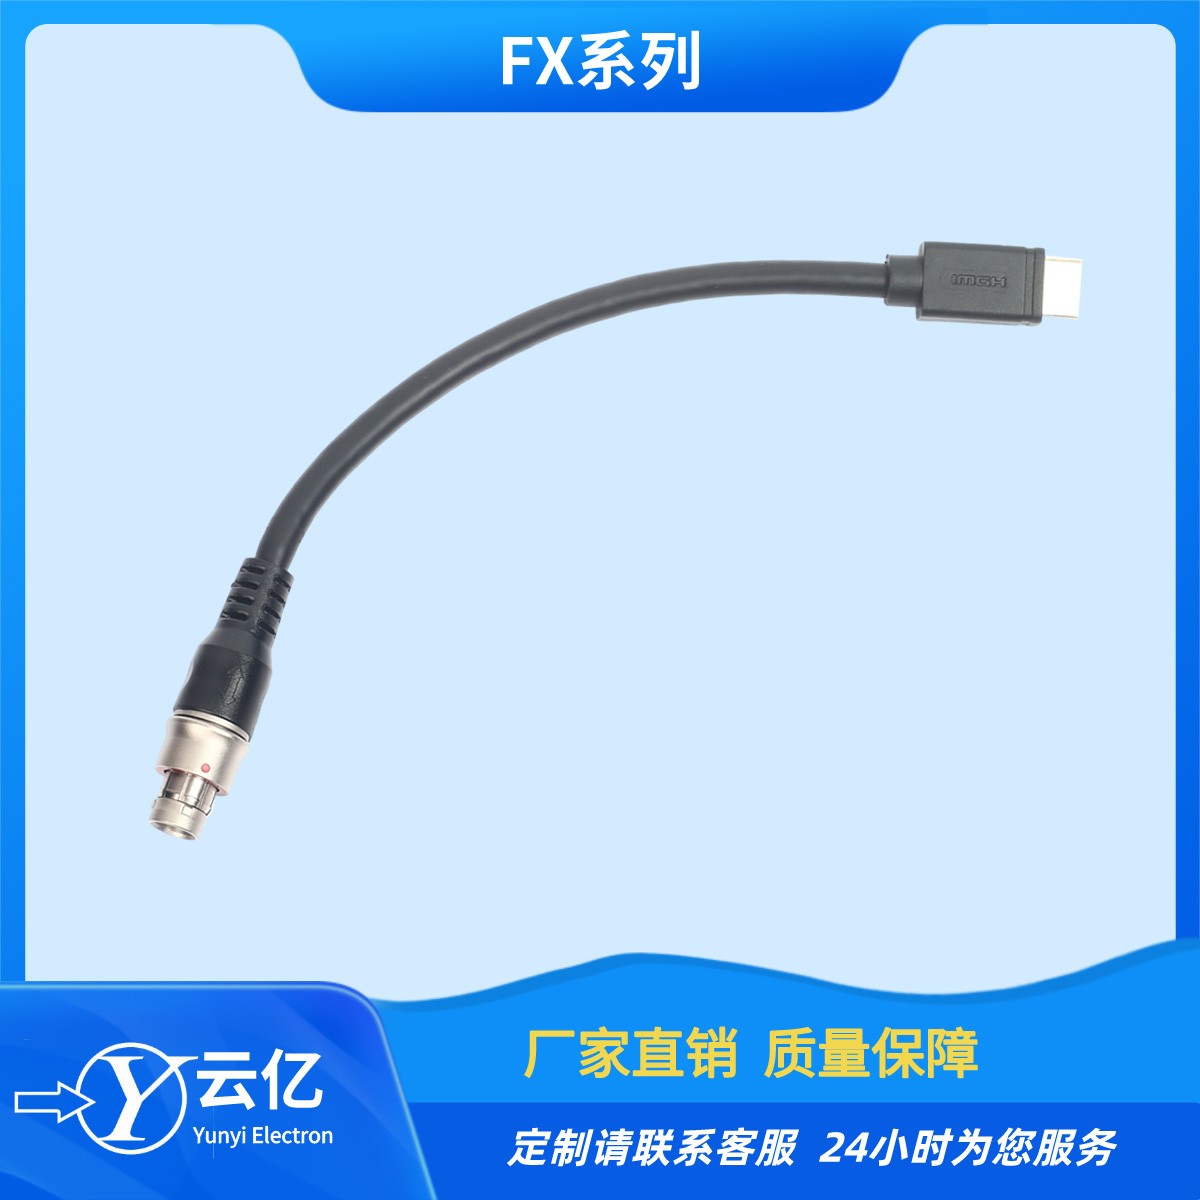 兼容各大厂家推拉自锁连接器FX1031T02C058JN-HS焊接HDMI线束插头